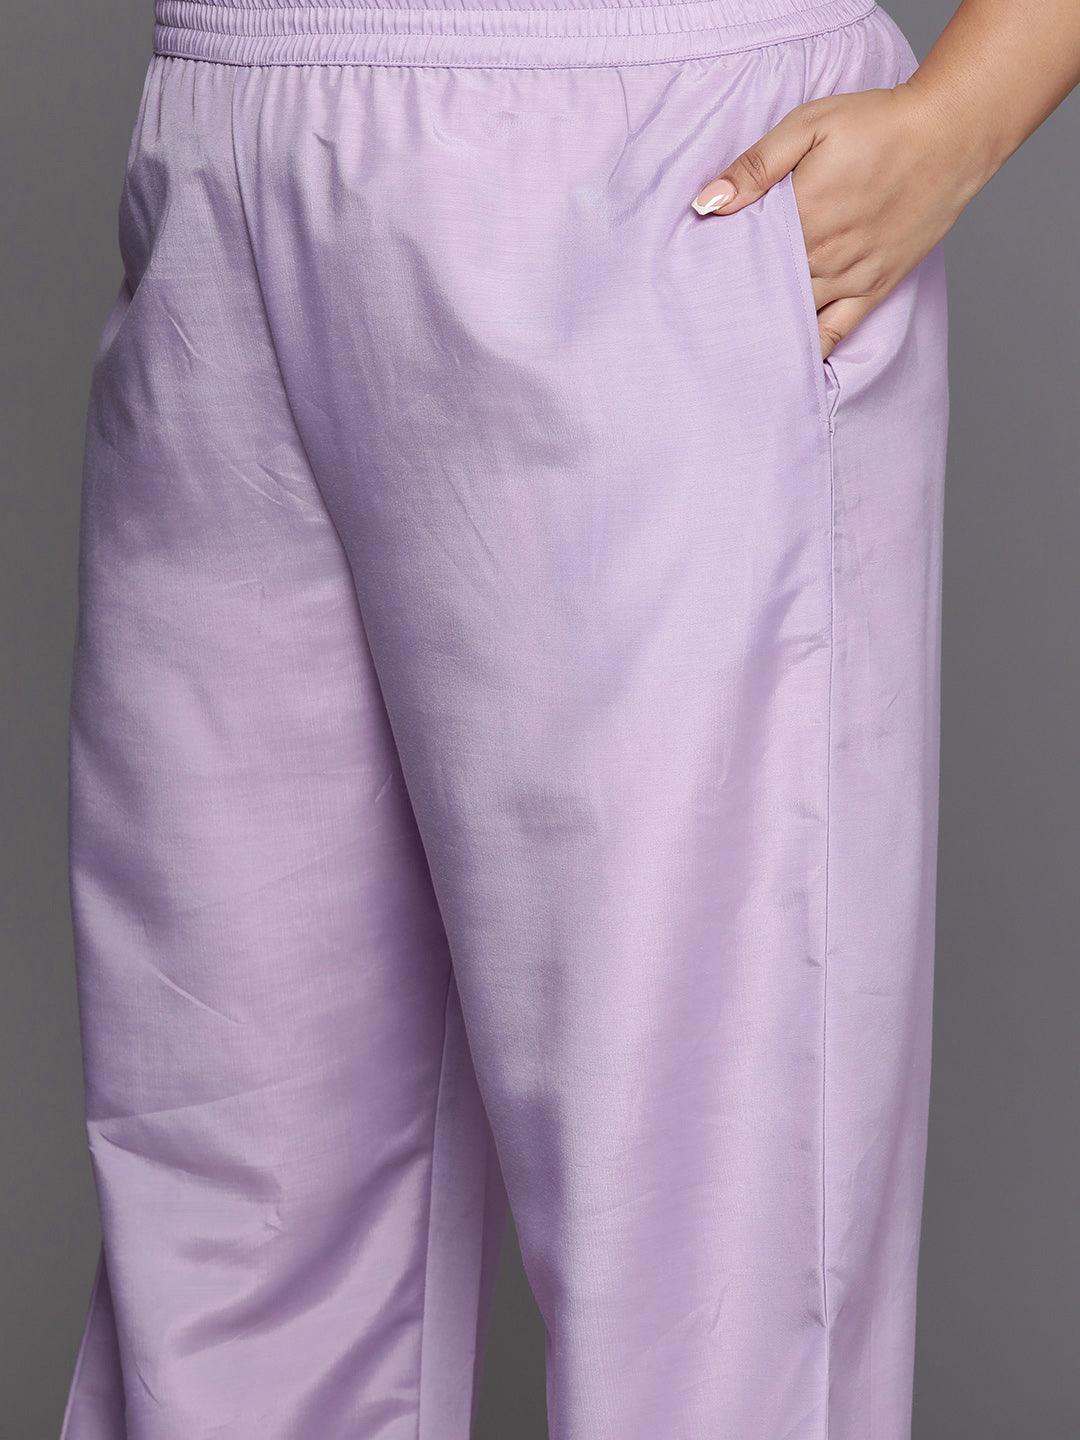 Plus Size Lavender Woven Design Silk Blend Straight Suit Set - Libas